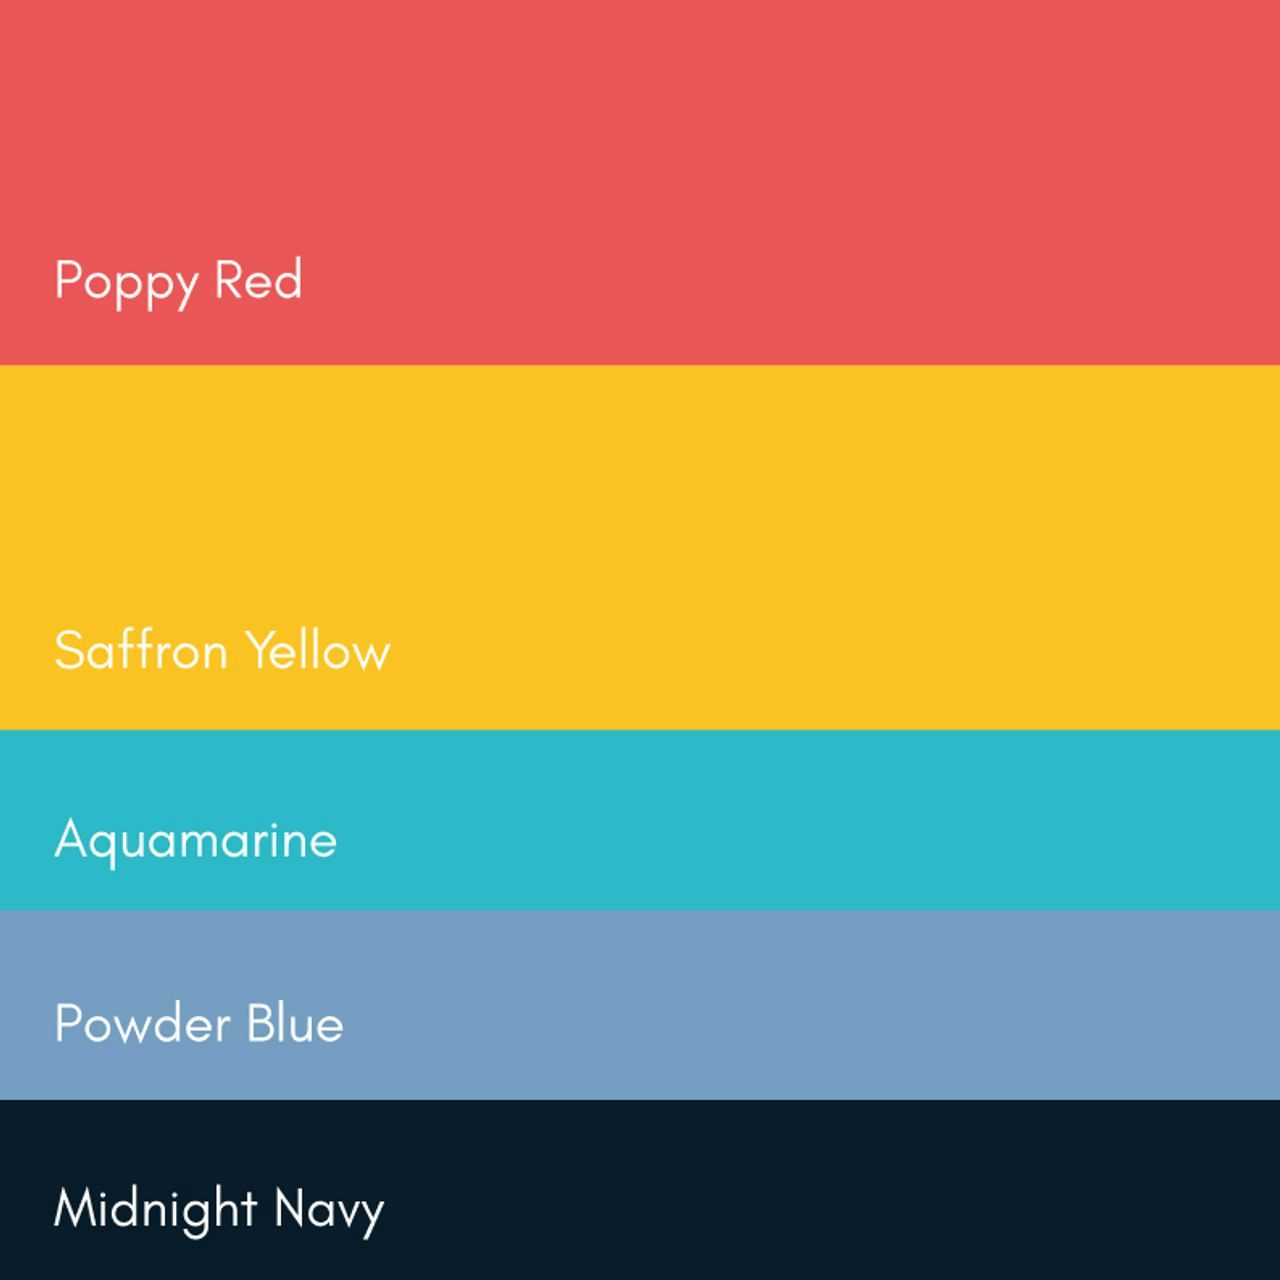 Colour palette for Appetite including Pantone colour codes.